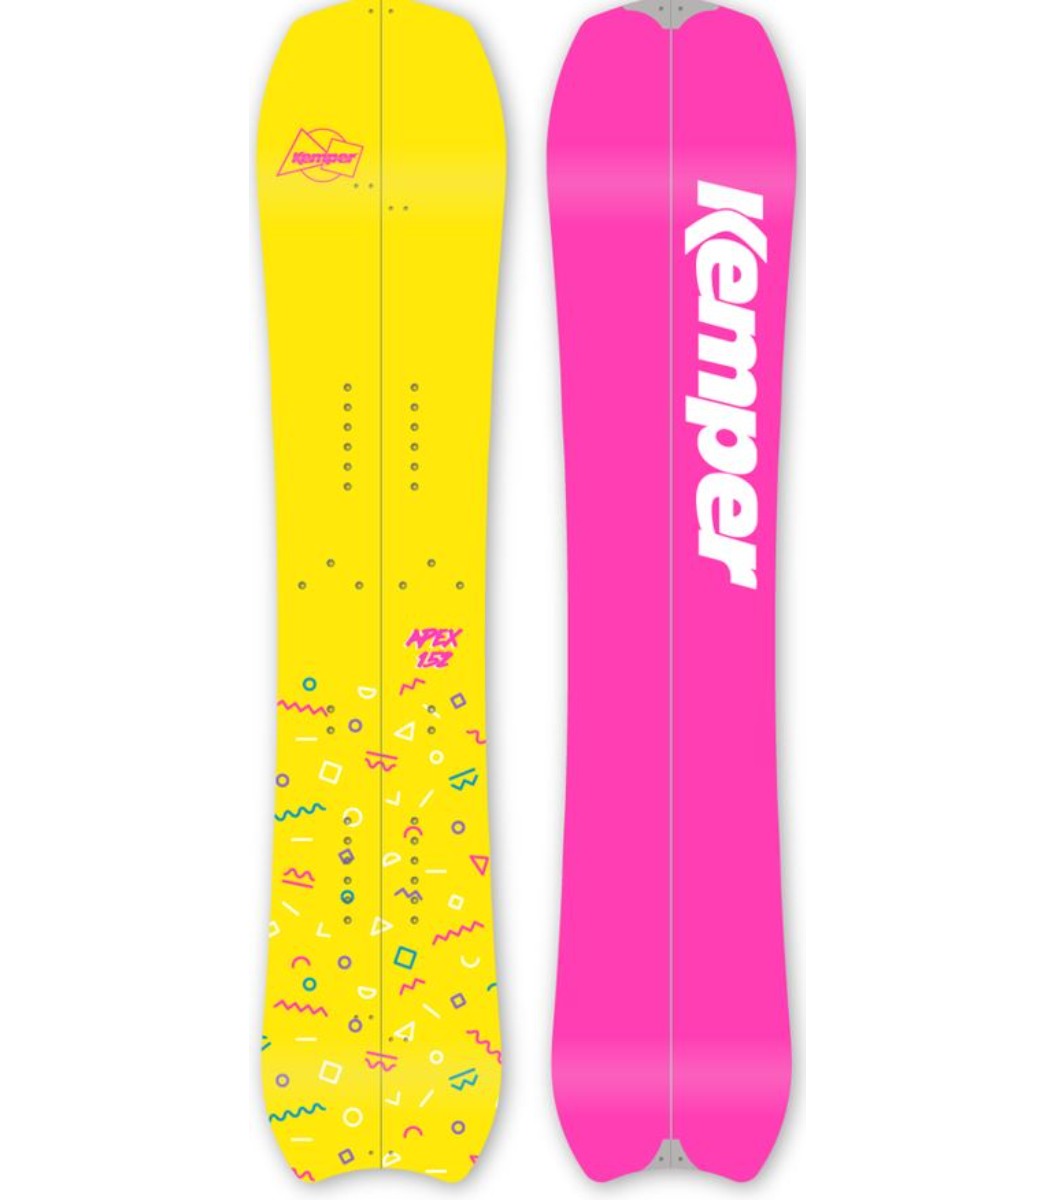 Kemper Apex Split Snowboard - 156 cm